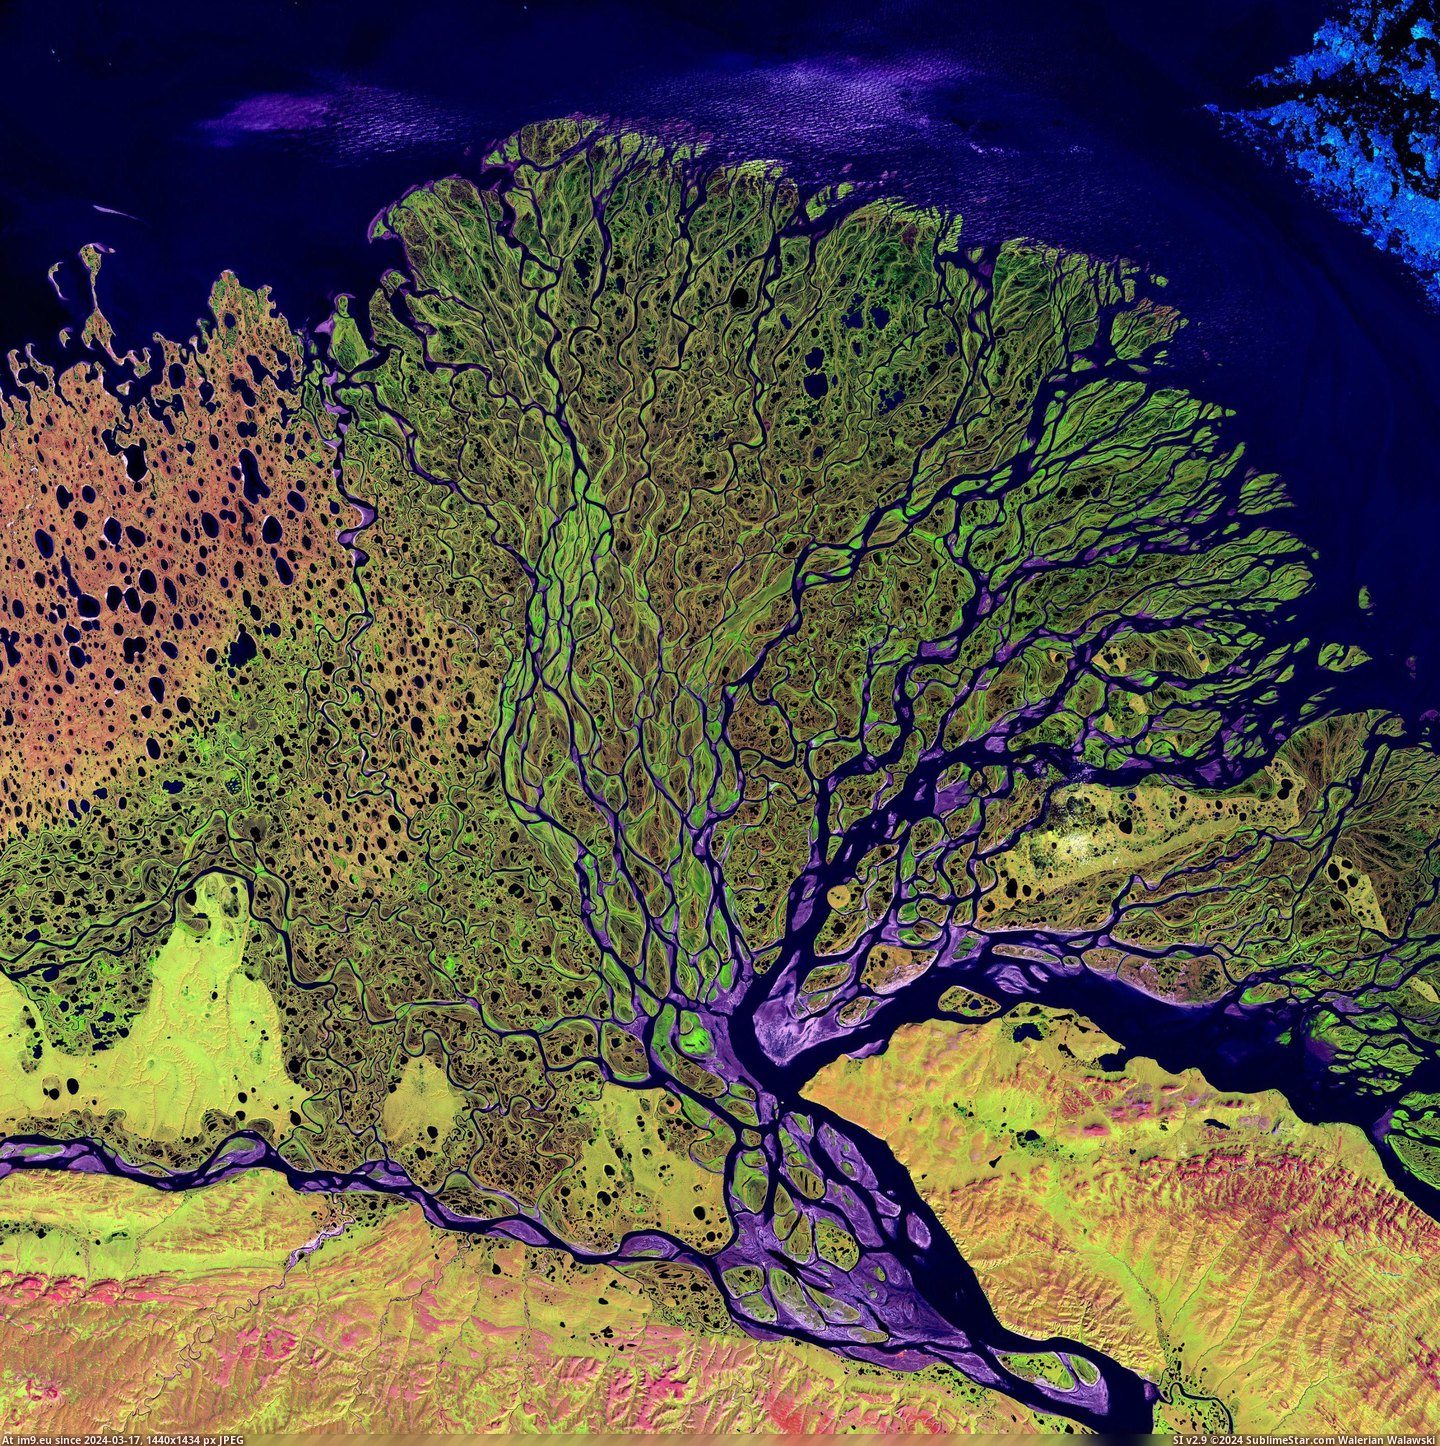 #River #Delta #Siberia #Lena [Earthporn] Lena River Delta, Siberia [3100 x 3100] Pic. (Obraz z album My r/EARTHPORN favs))